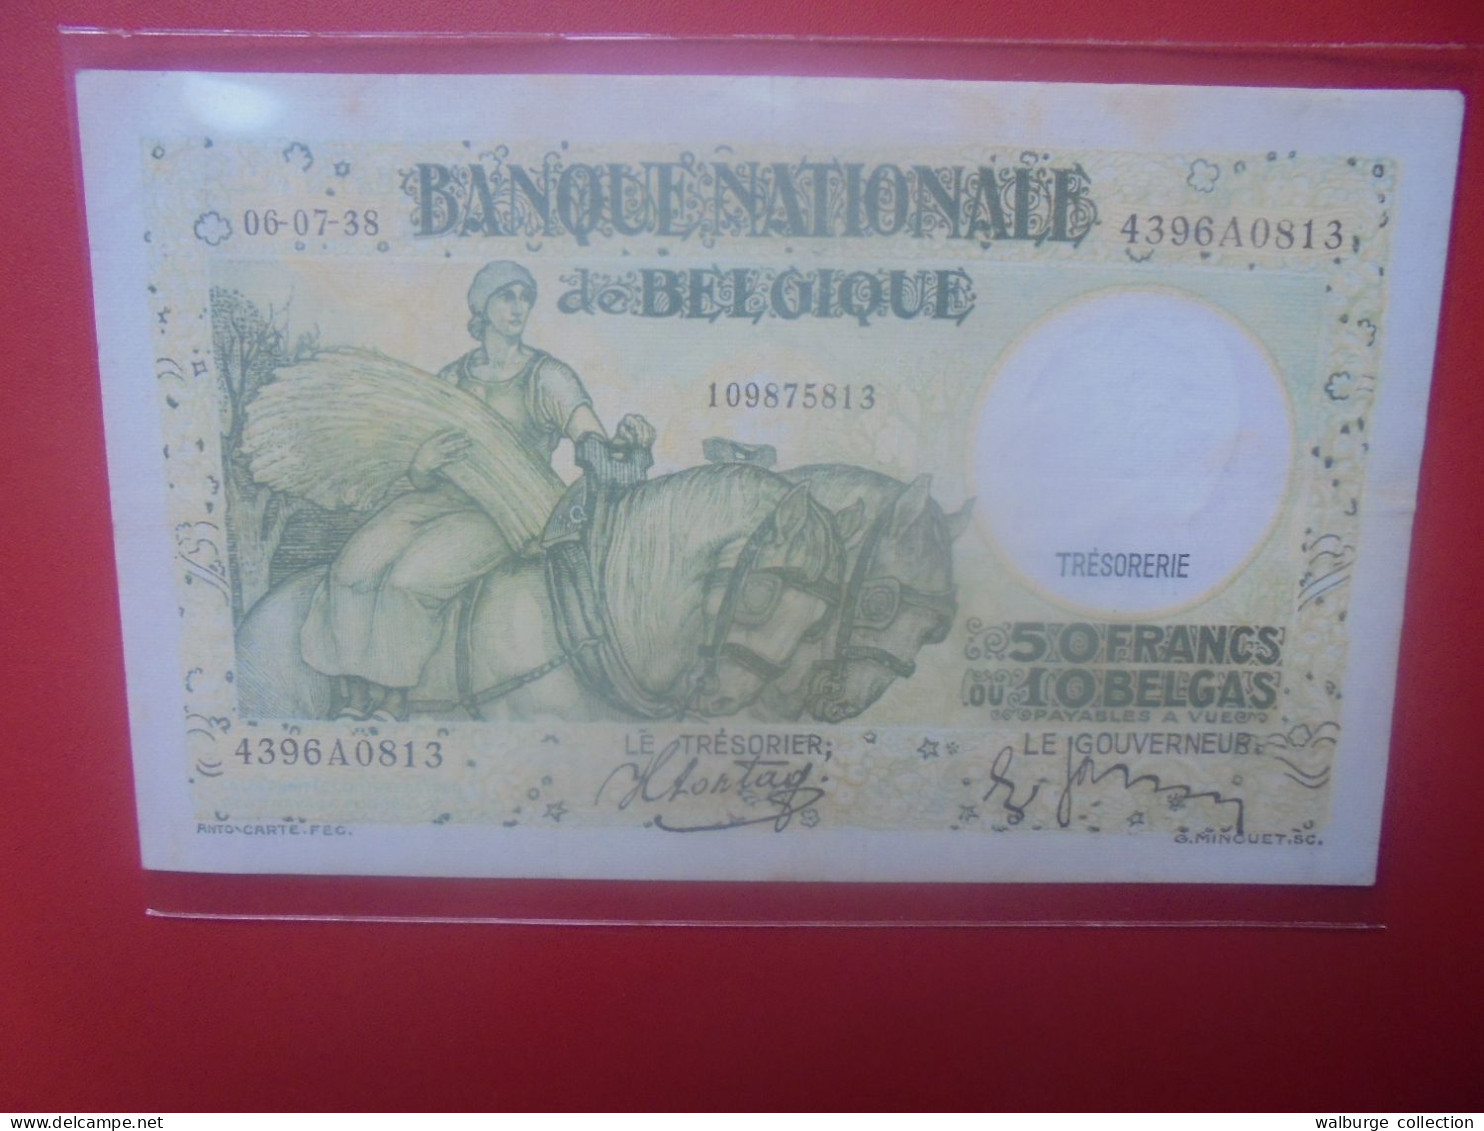 BELGIQUE 50 FRANCS 1938 Circuler (B.33) - 50 Francs-10 Belgas